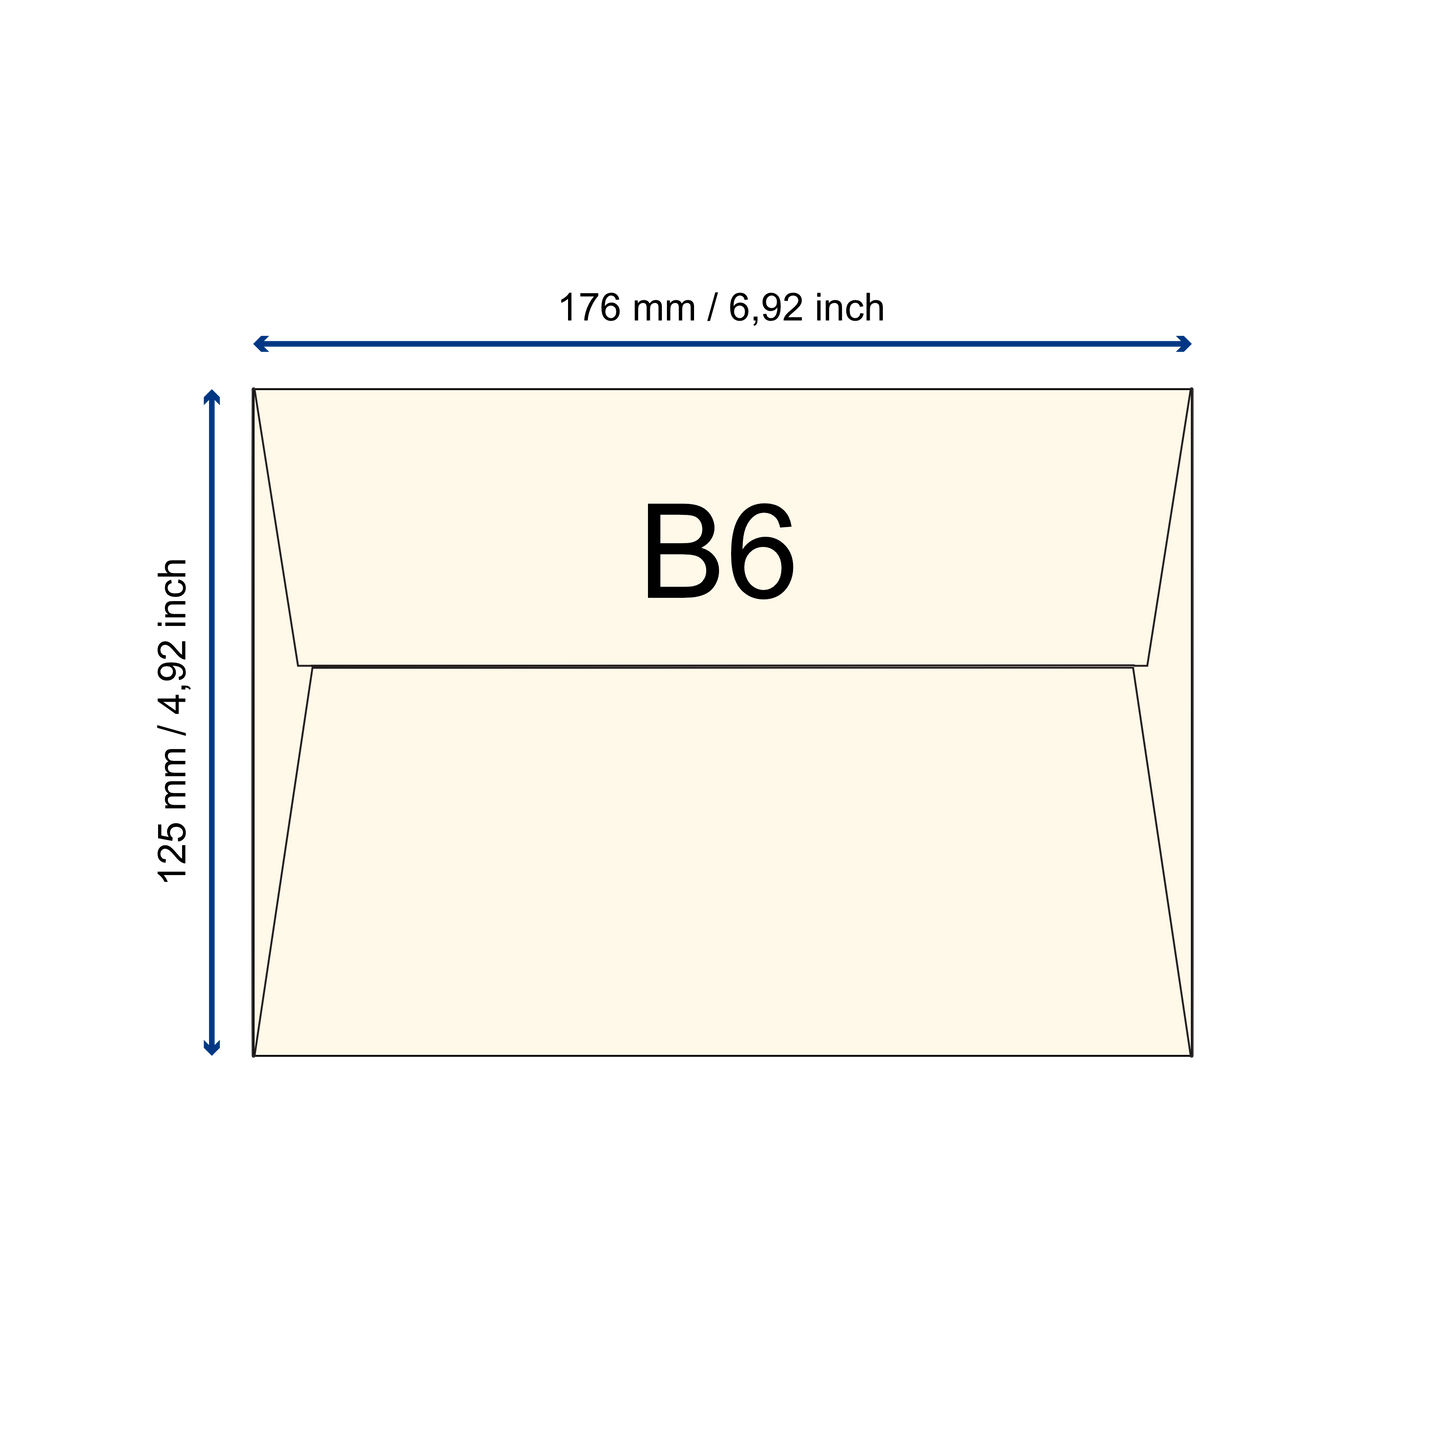 Büttenpapier-Umschlag B6 - Trapezlasche  - babyblau